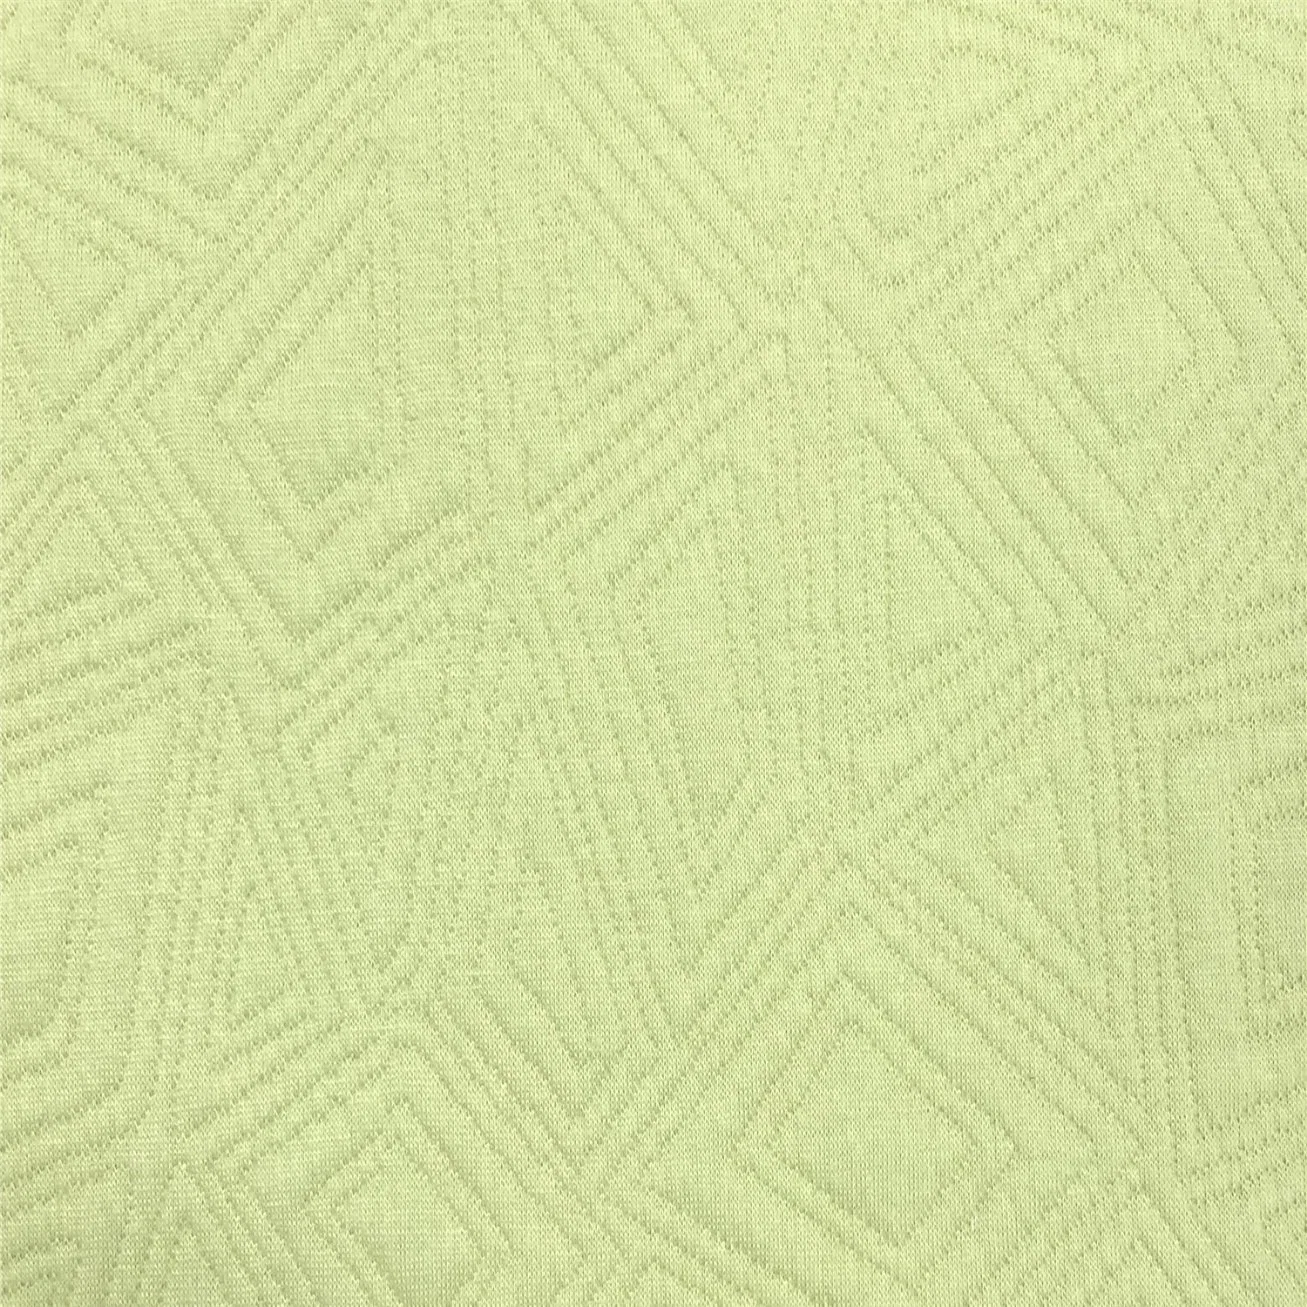 Жаккардовая вязка Air-Tier Mattress Главная Текстильная переработанная полиэфирная хлопковая ткань-Fgtex® -Экологичный сад ткани с 20 лет глубокой культивации